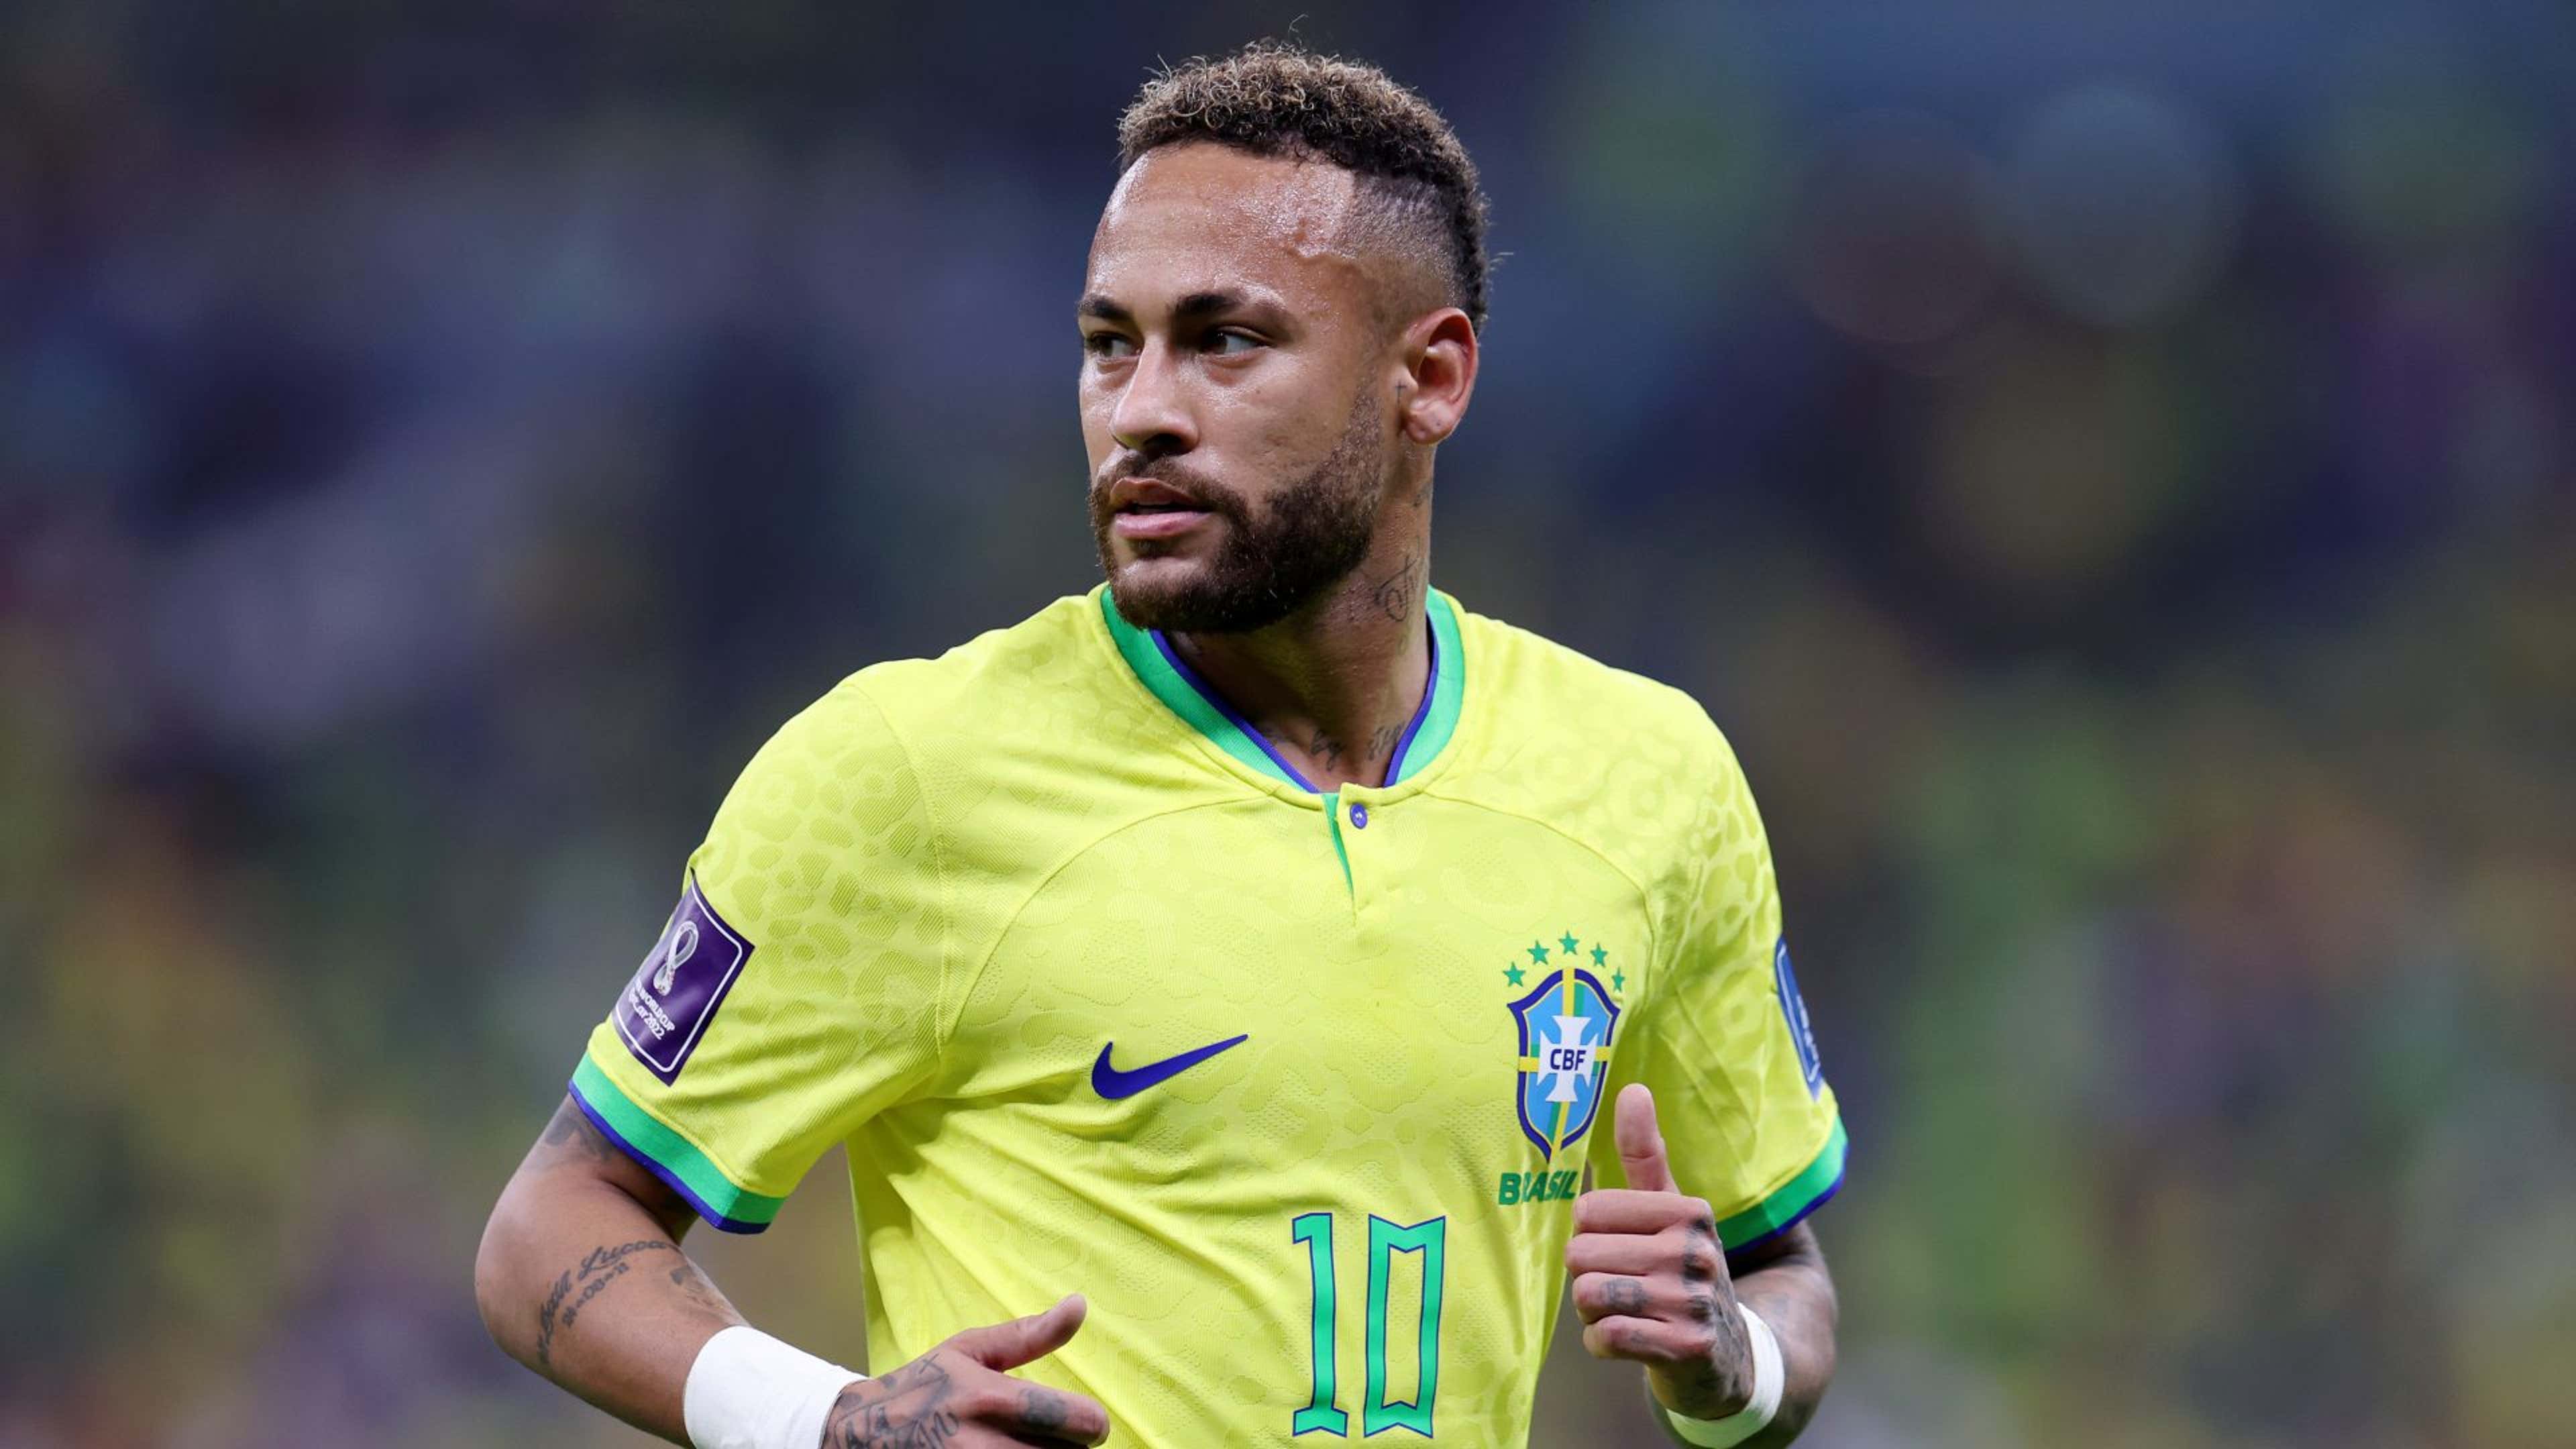 Não é o Neymar: saiba quem é o brasileiro entre os 10 jogadores